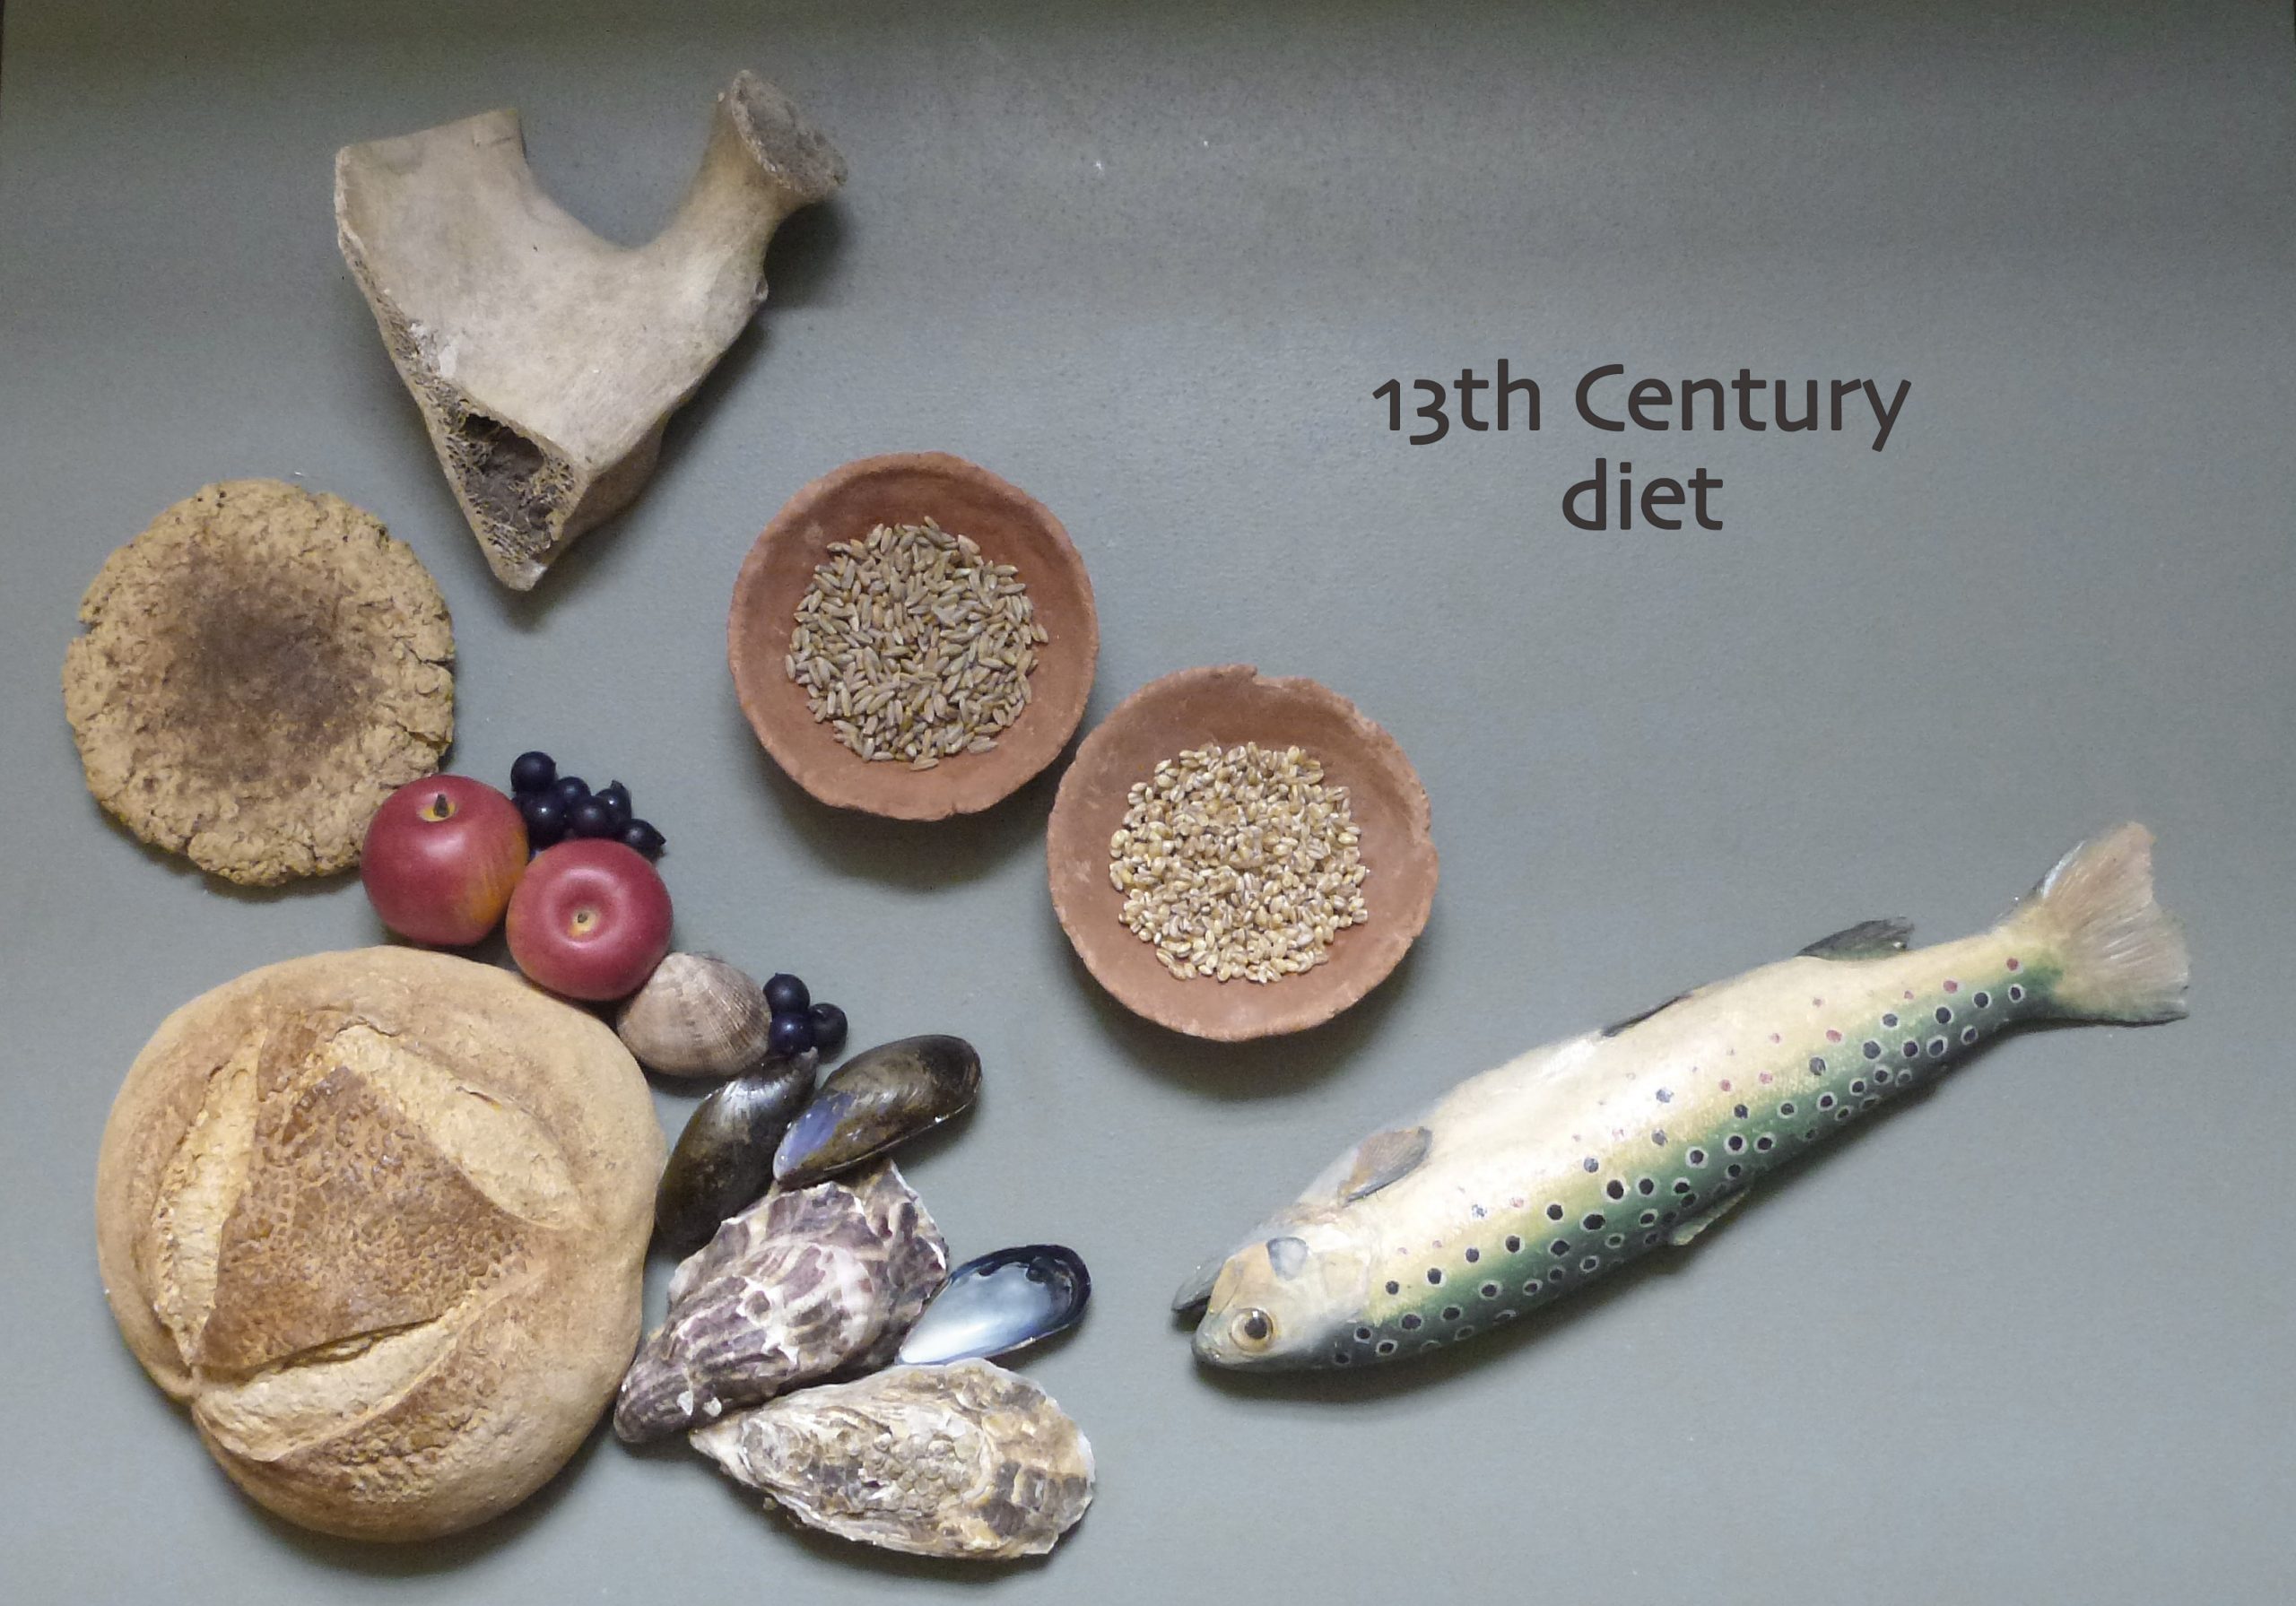 النظام الغذائي في أوروبا العصور الوسطى|النظام الغذائي في أوربا العصور الوسطى|النظام الغذائي في أوروبا العصور الوسطى|النظام الغذائي في أوروبا العصور الوسطى